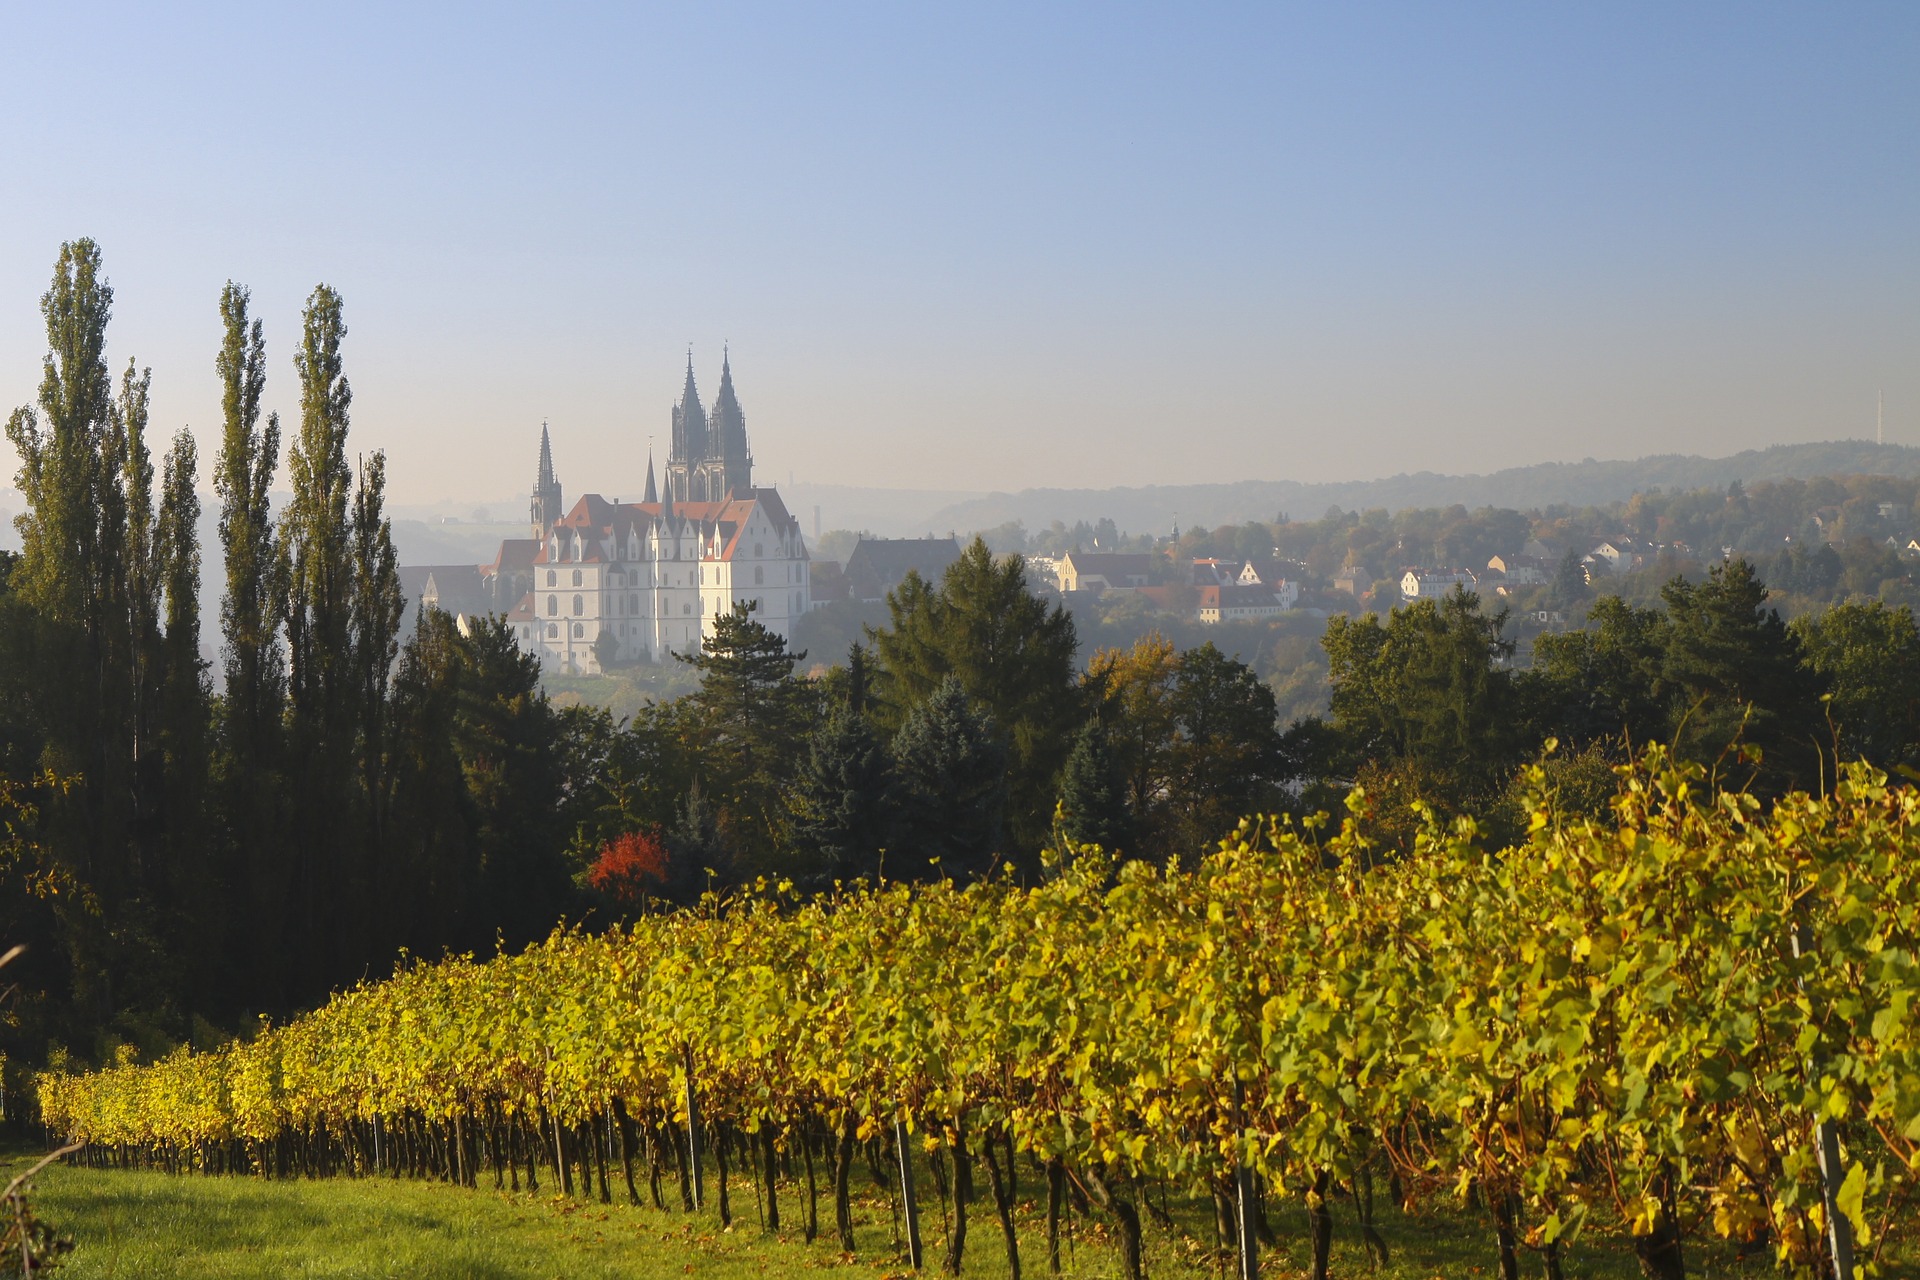 Im Vordergrund Weinreben, im Hintergrund das Schloss Albrechtsburg in Meißen